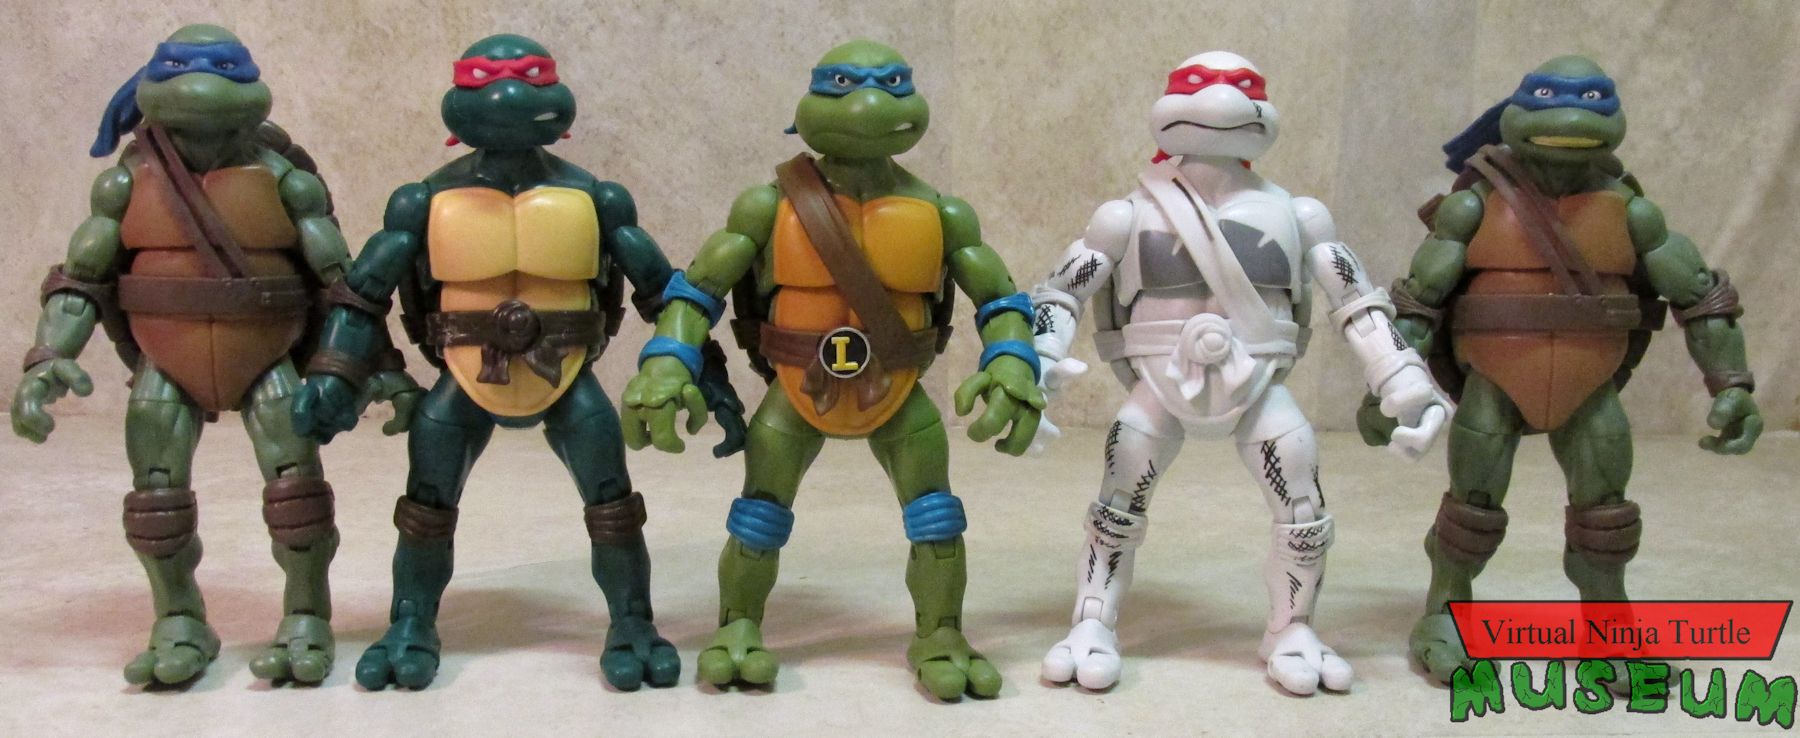 Playmates Teenage Mutant Ninja Turtles Ninja Elite Turtles and B&W 4 Pack  Review